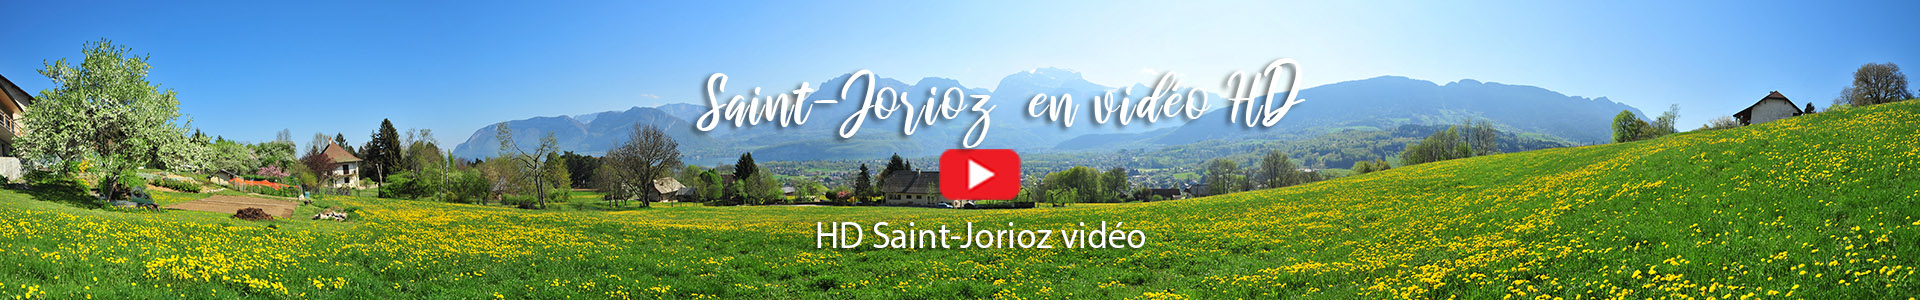 Saint-Jorioz in video